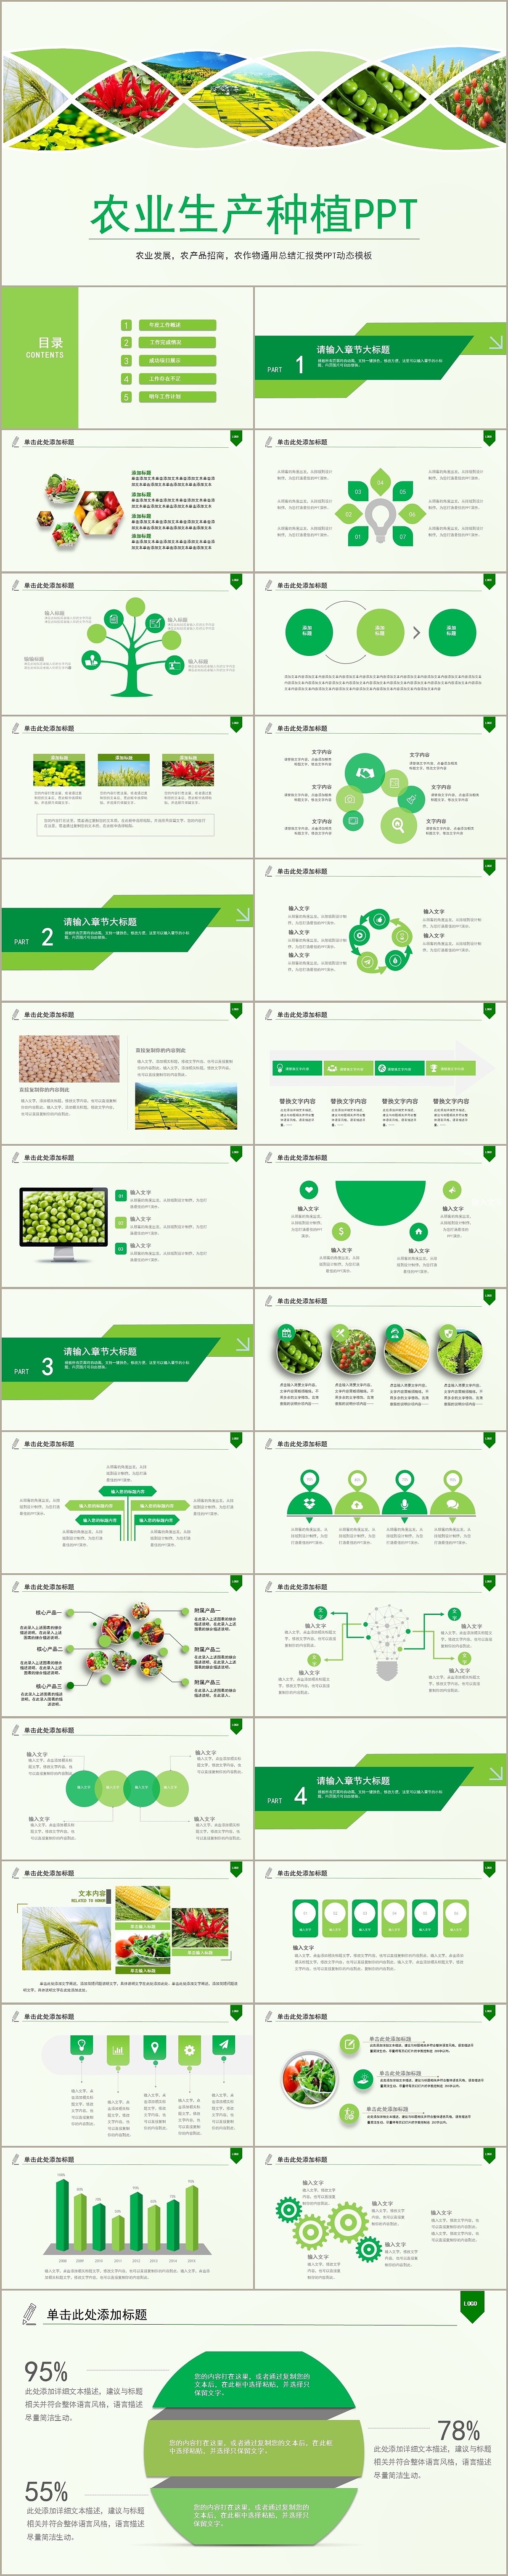 特色农产品介绍模板图片